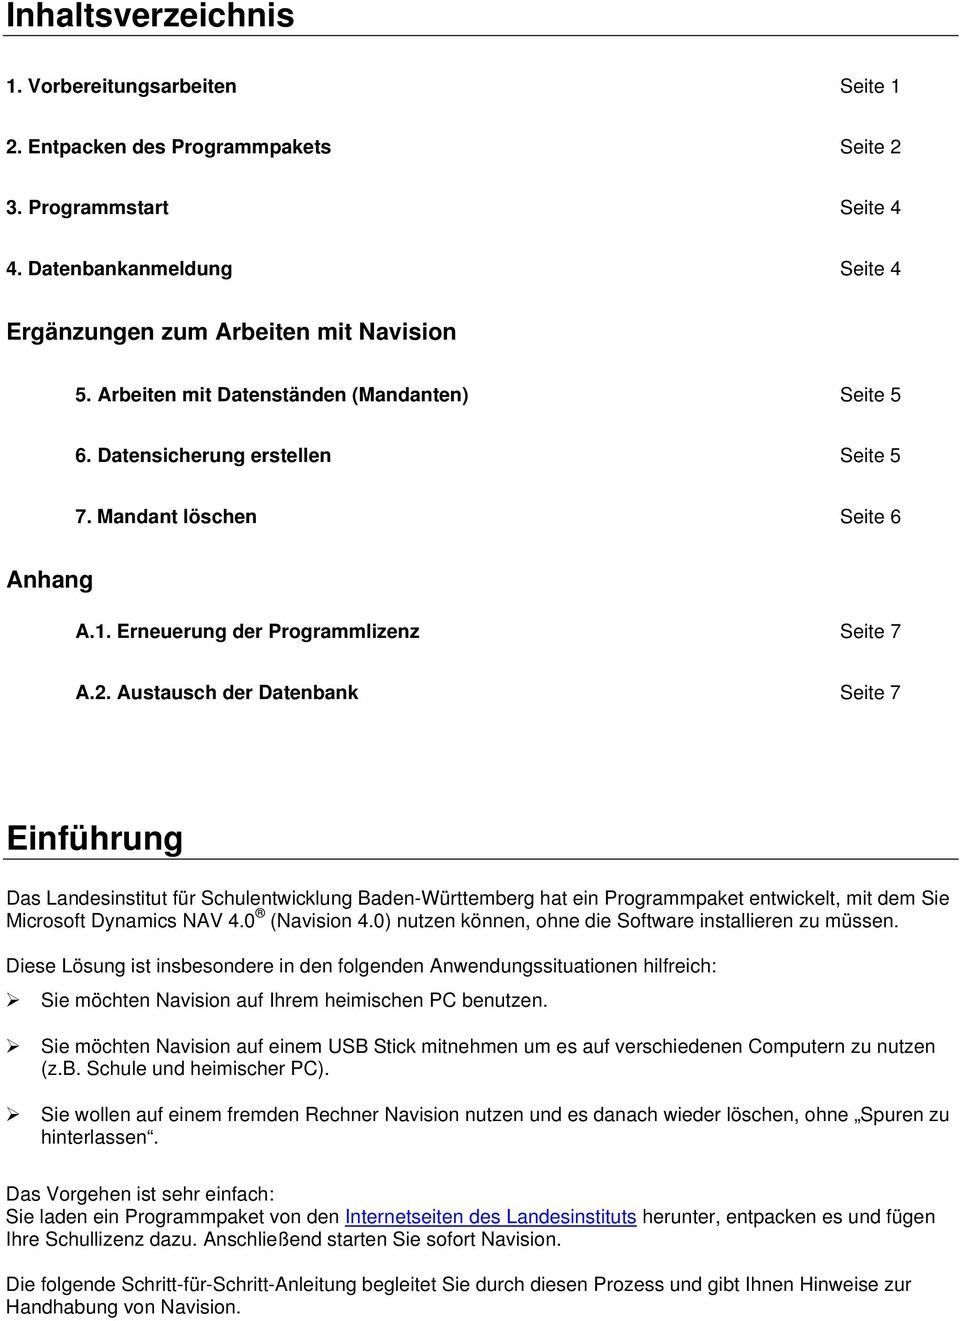 Austausch der Datenbank Seite 7 Einführung Das Landesinstitut für Schulentwicklung Baden-Württemberg hat ein Programmpaket entwickelt, mit dem Sie Microsoft Dynamics NAV 4.0 (Navision 4.